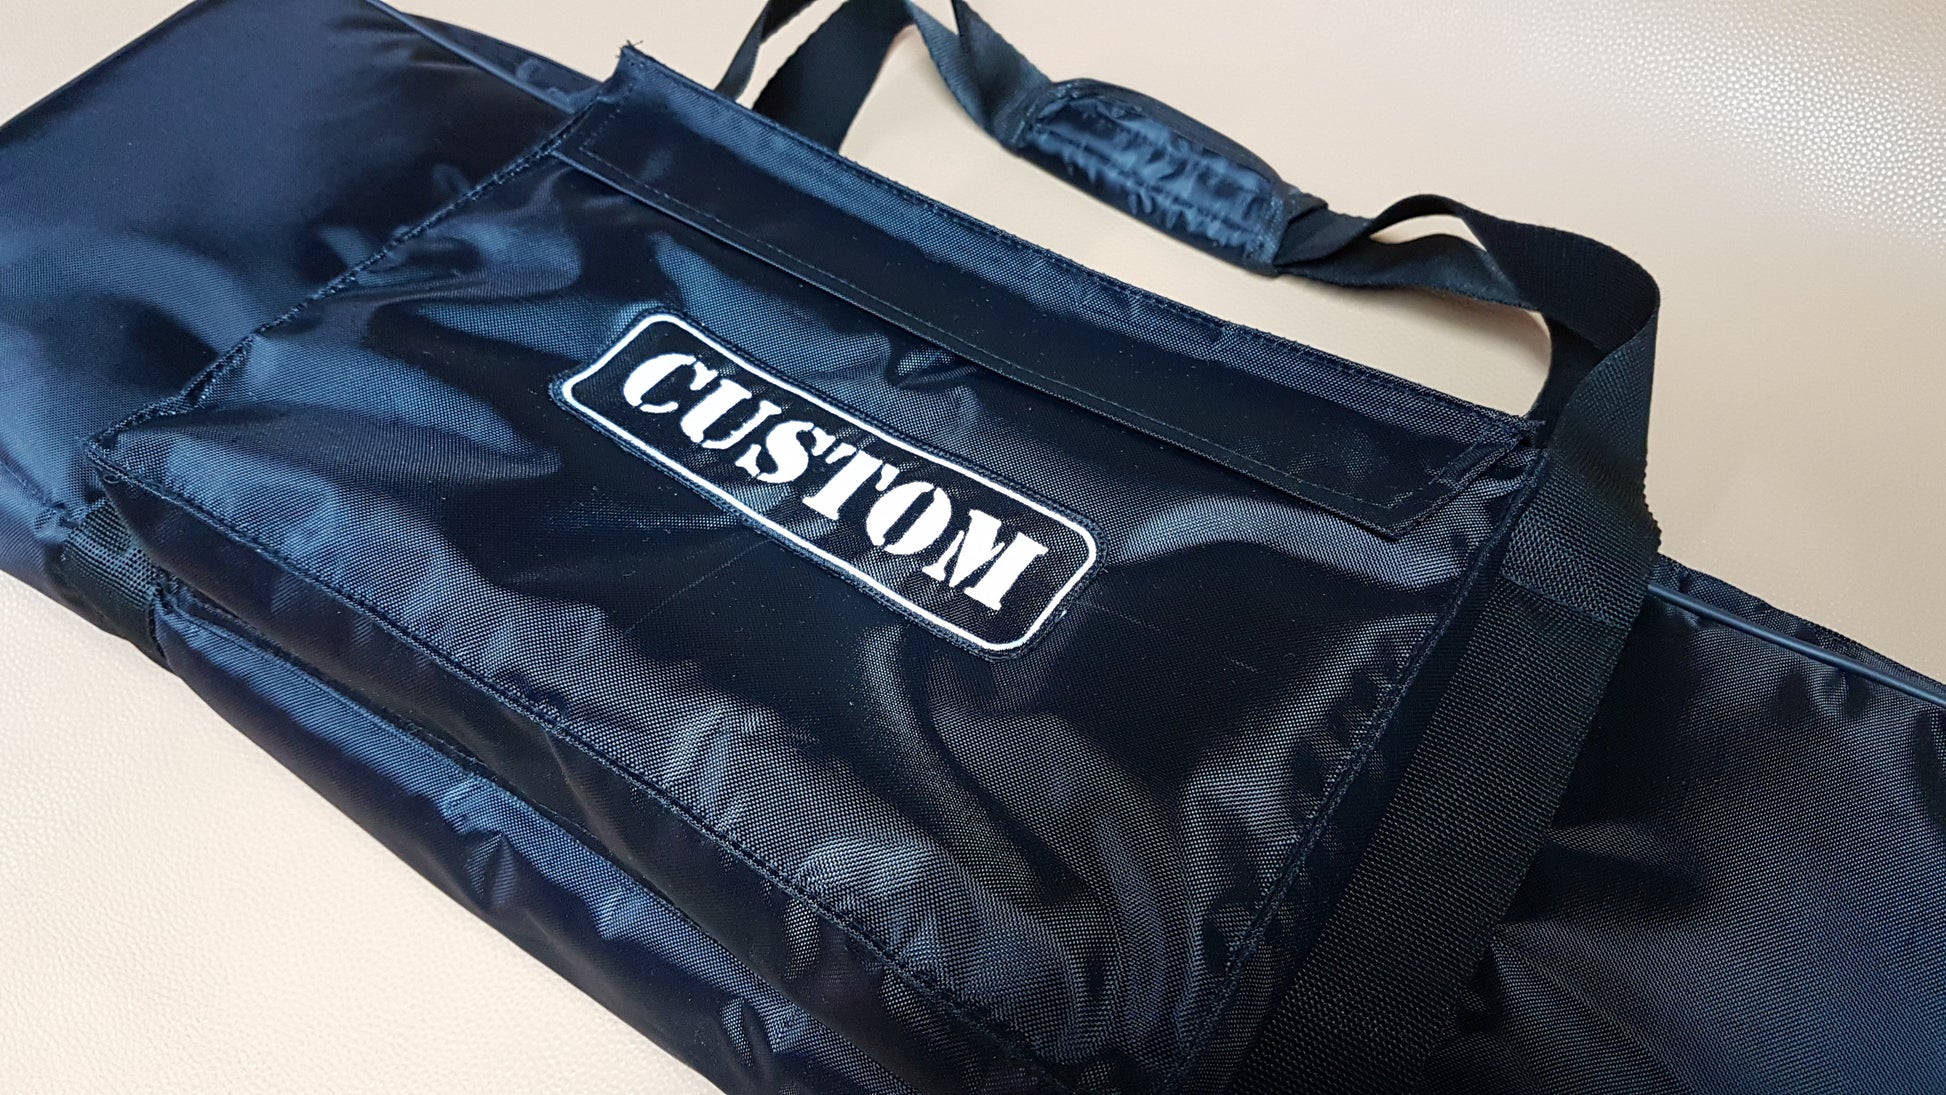 Custom Padded Keyboard and Synth Travel Bag Soft Case Inside Velvet Interior Heavy Duty Nylon Protection Slip Cover